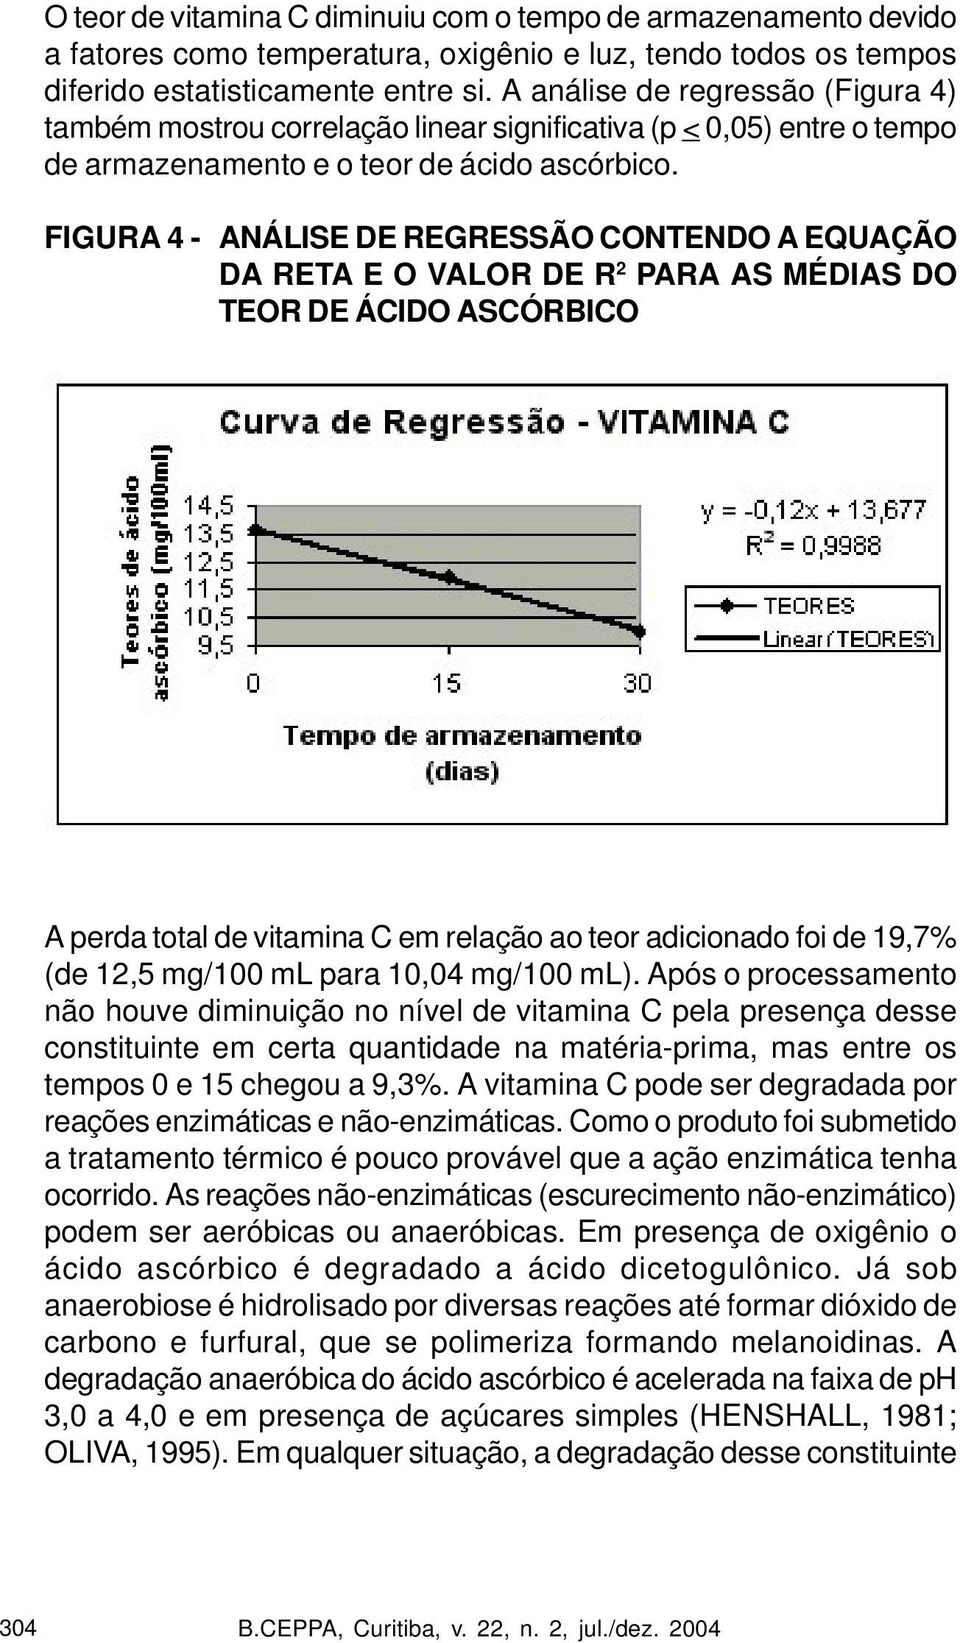 FIGURA 4 - ANÁLISE DE REGRESSÃO CONTENDO A EQUAÇÃO DA RETA E O VALOR DE R 2 PARA AS MÉDIAS DO TEOR DE ÁCIDO ASCÓRBICO A perda total de vitamina C em relação ao teor adicionado foi de 19,7% (de 12,5